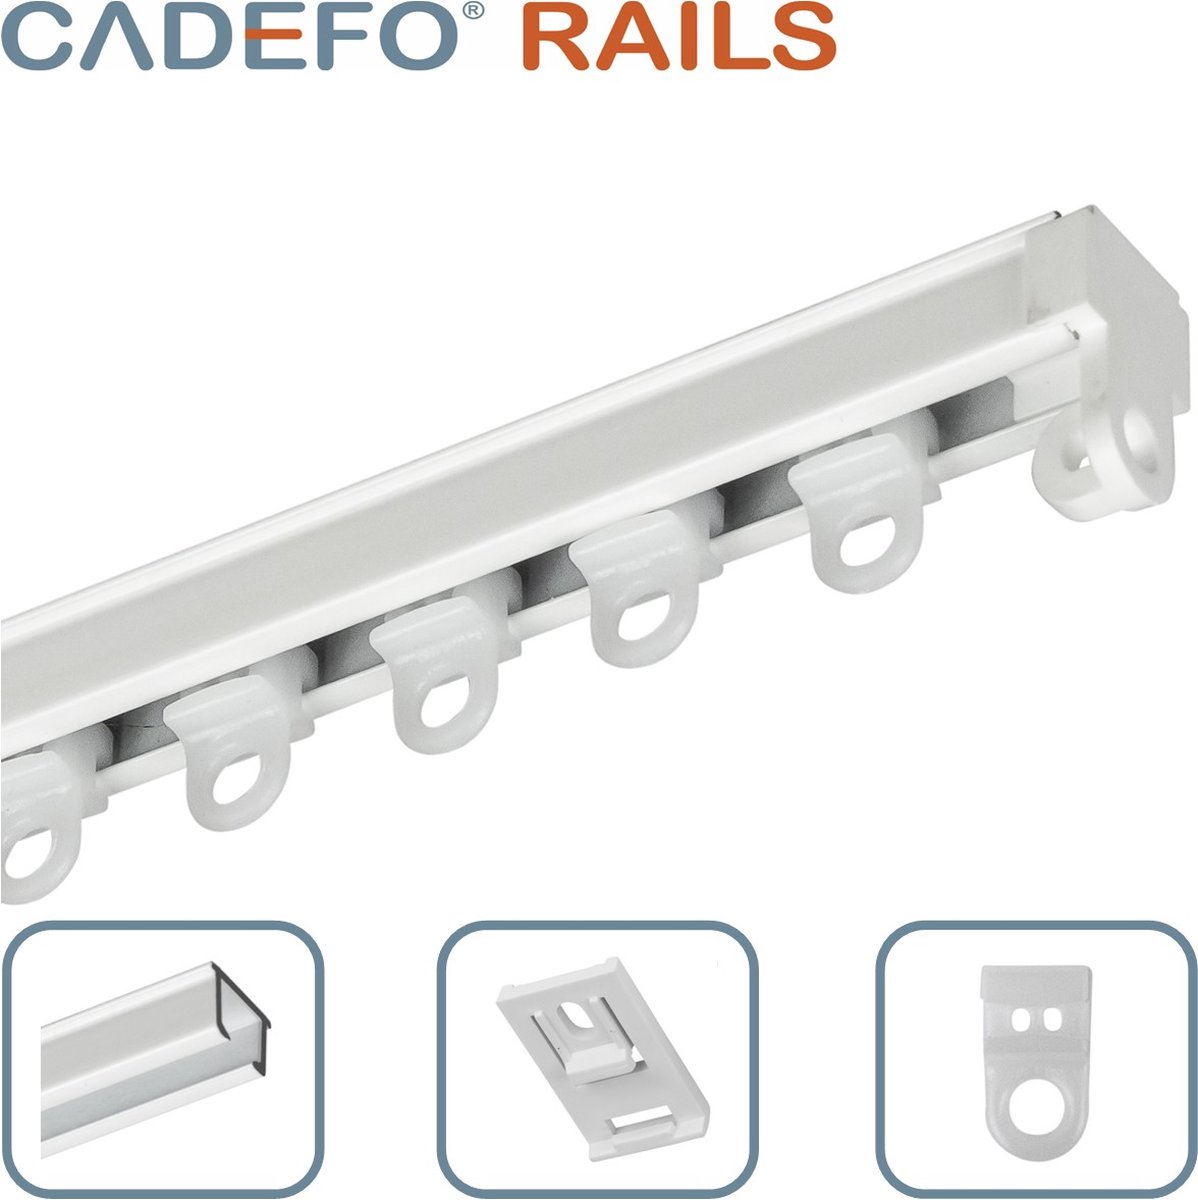 CADEFO RAILS (551 - 600 cm) Gordijnrails - Compleet op maat! - UIT 1 STUK - Leverbaar tot 6 meter - Plafondbevestiging - Lengte 569 cm